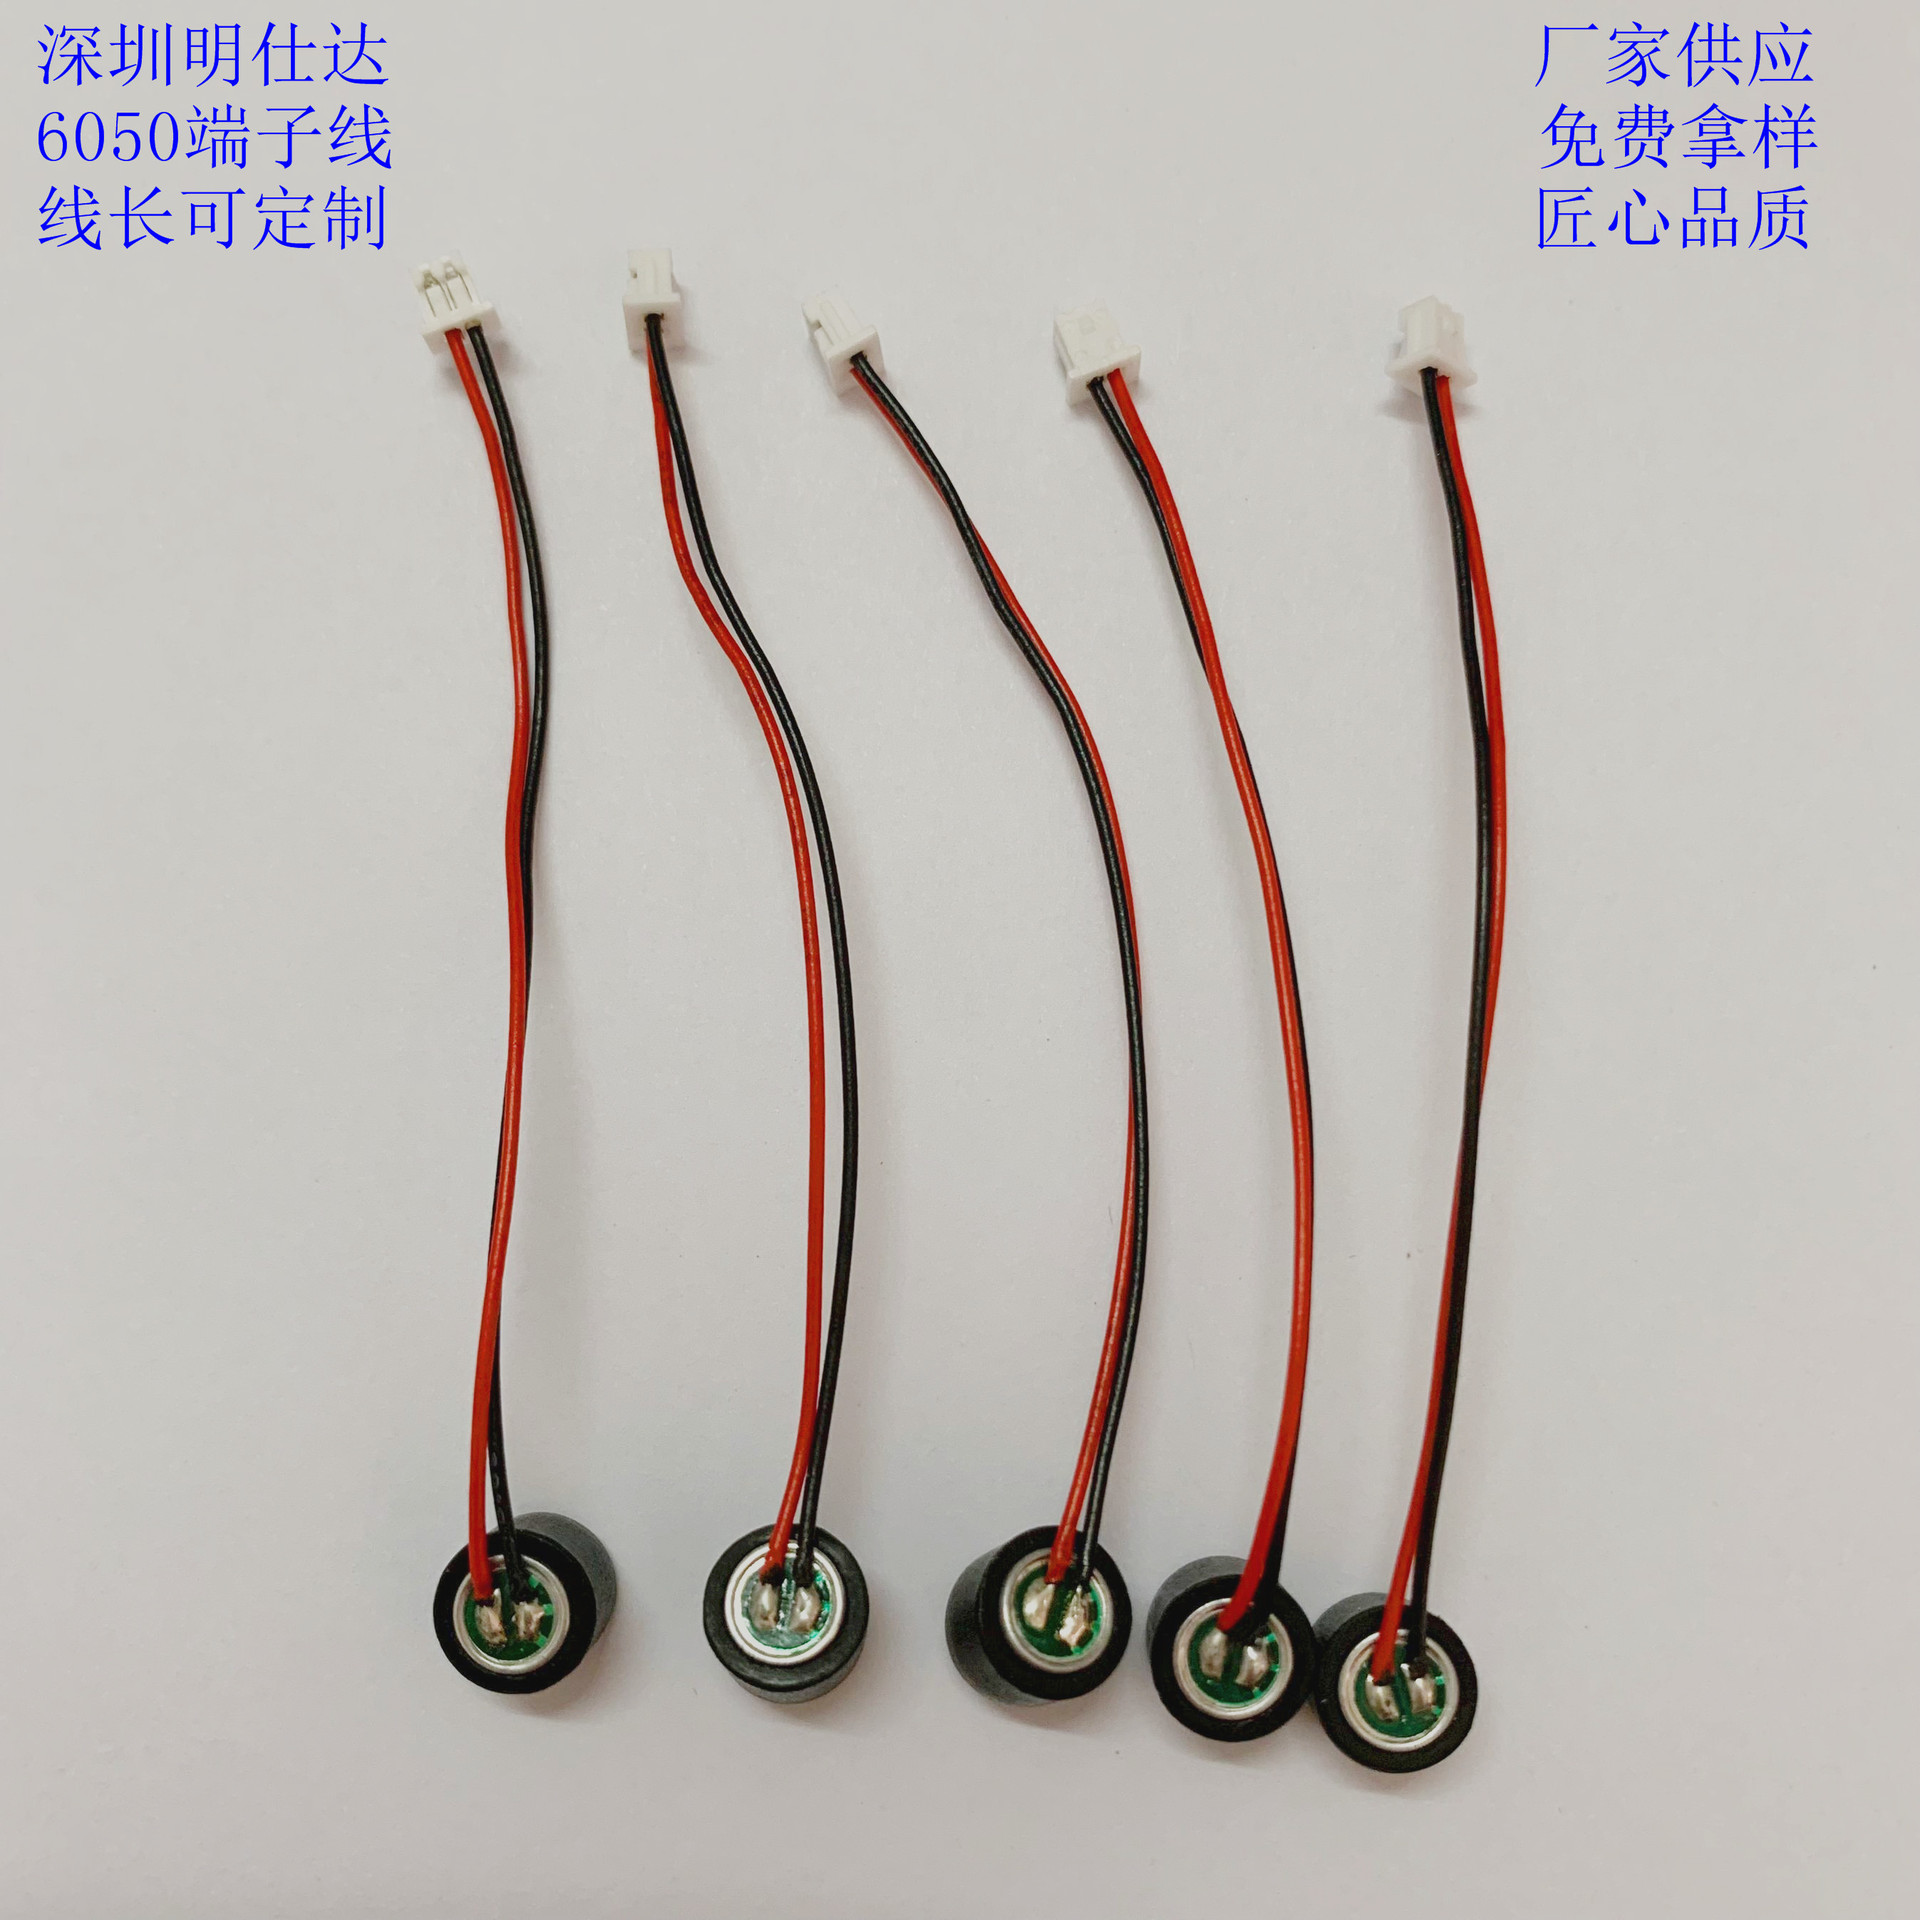 6050驻极体传声器咪头mic焊2P1.25间距端子线长70mm带胶套 可订制